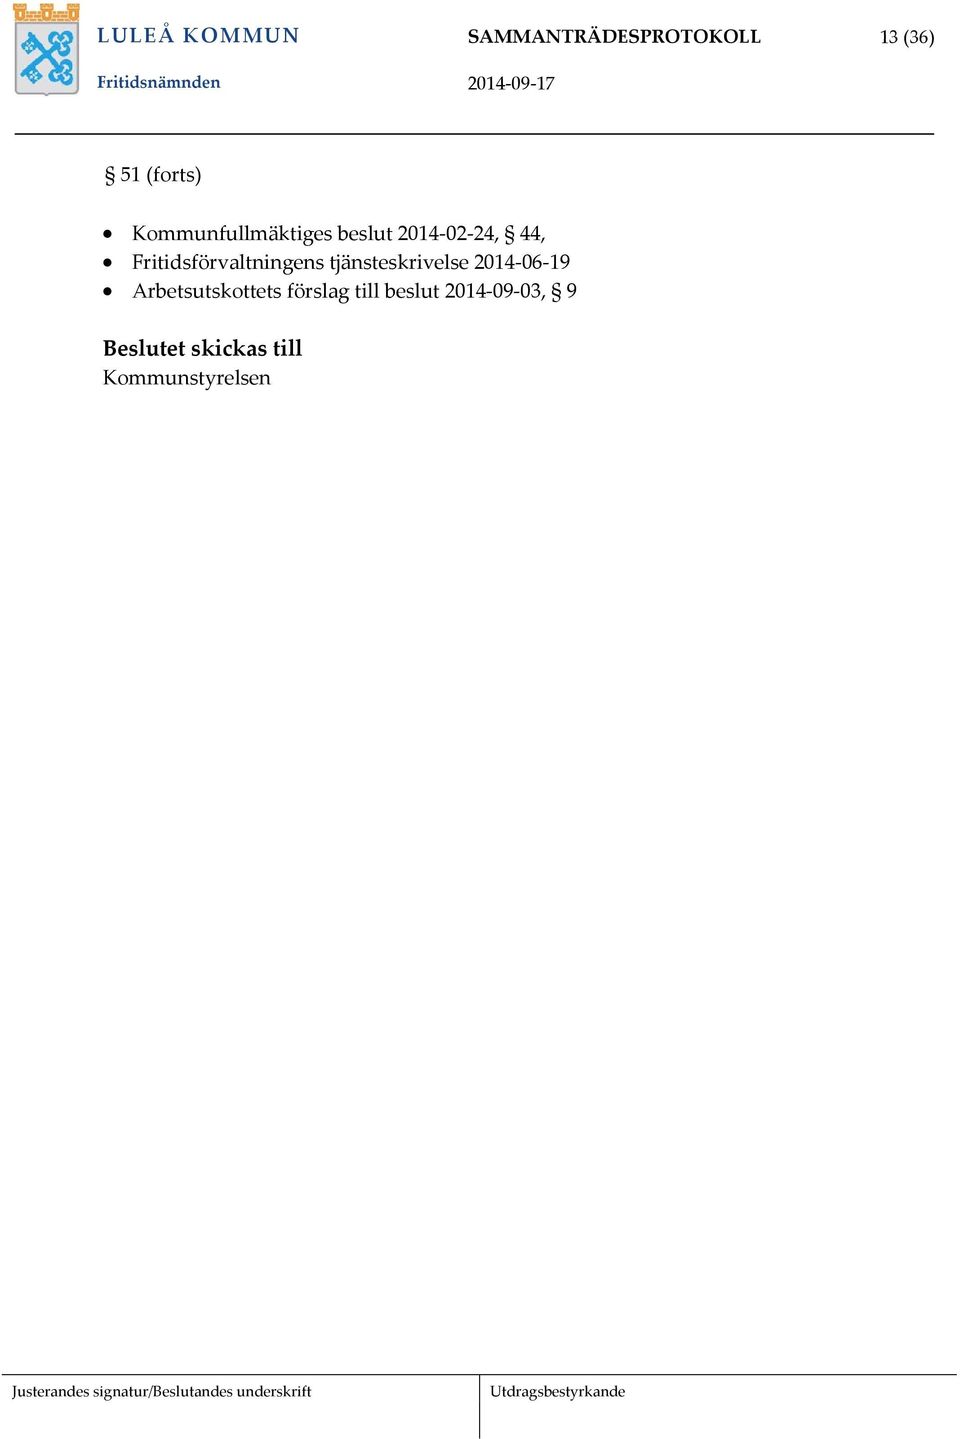 Fritidsförvaltningens tjänsteskrivelse 2014-06-19